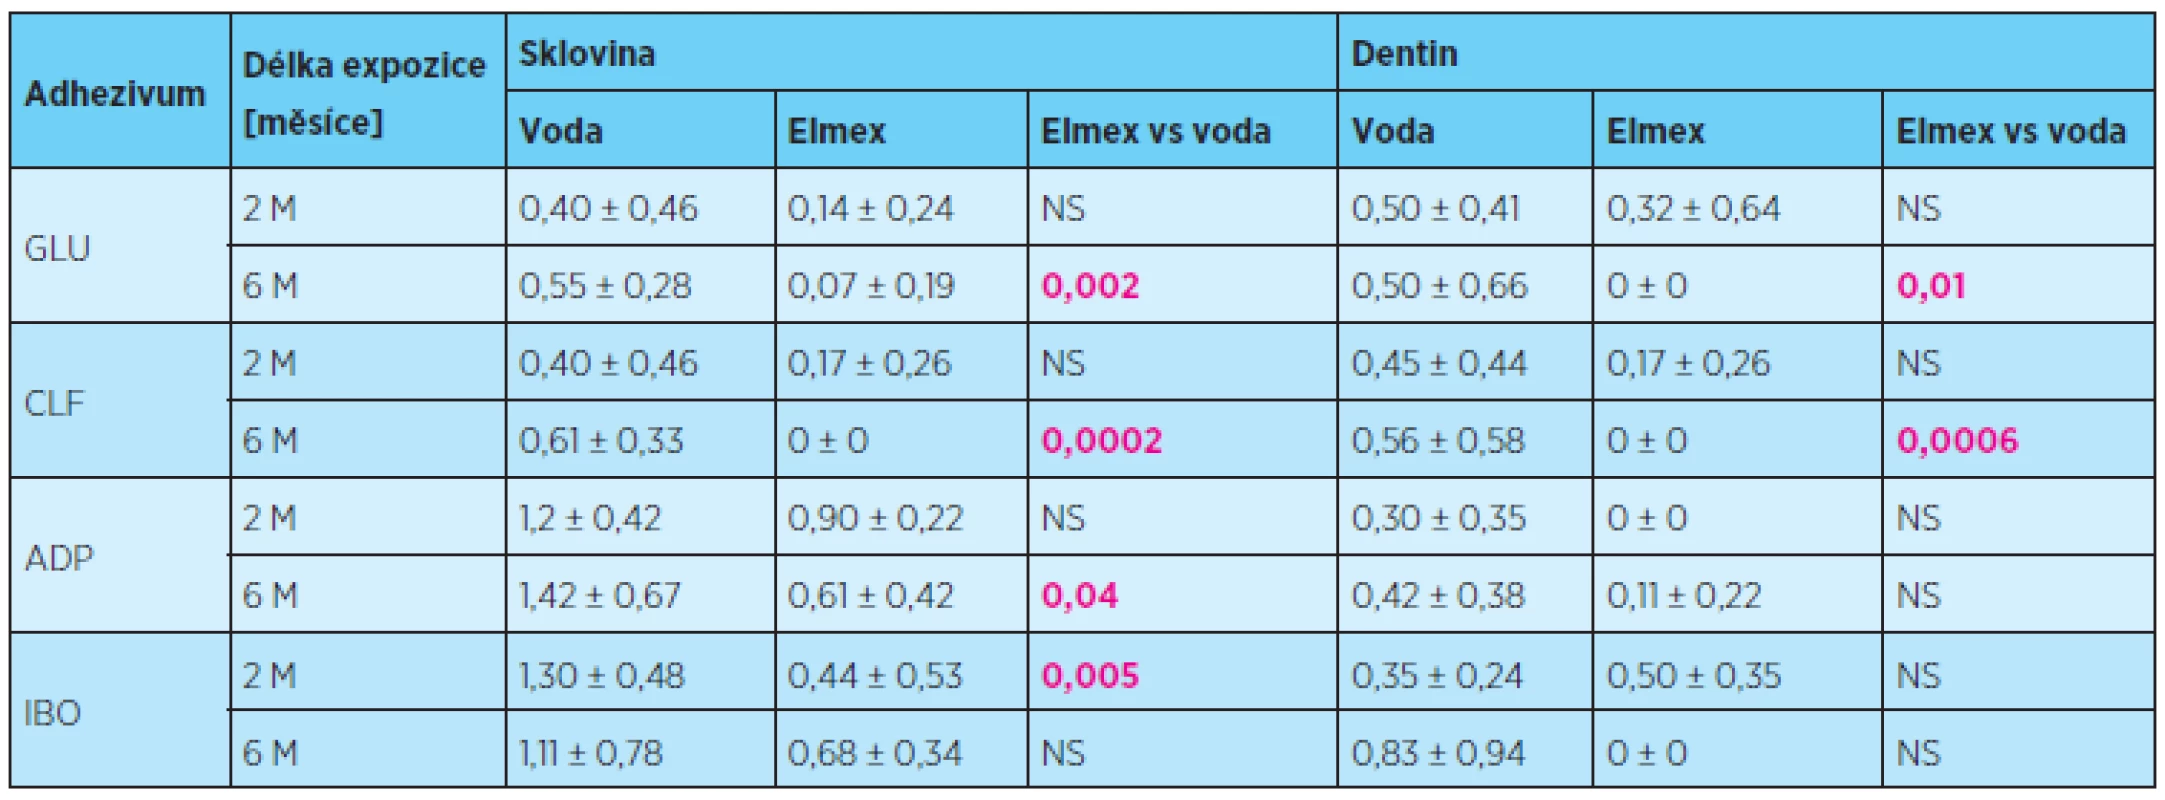 Rozsah průniku indikačního barviva (průměrné skóre ± směrodatná odchylka) sklovinným a dentinovým okrajem výplní po expozici ústní vodě Elmex v porovnání s destilovanou vodou, délka expozice 2 a 6 měsíců, statistické hodnocení
Mannův-Whitneyho test, p = 0,05